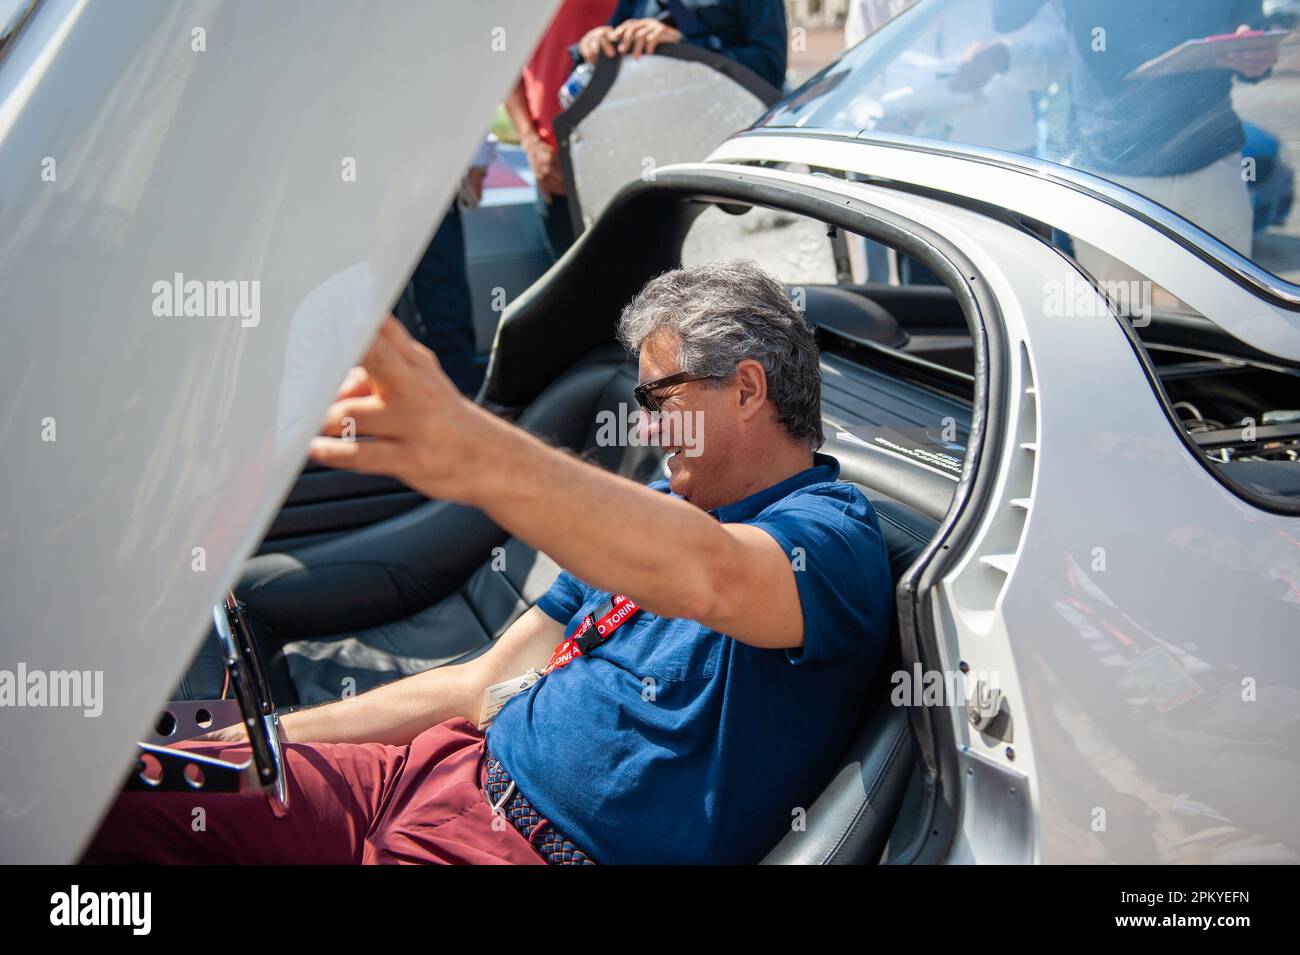 06/22/2019 Fabrizio Giugiaro al posto di guida della Chevrolet Corvair Testudo Foto Stock